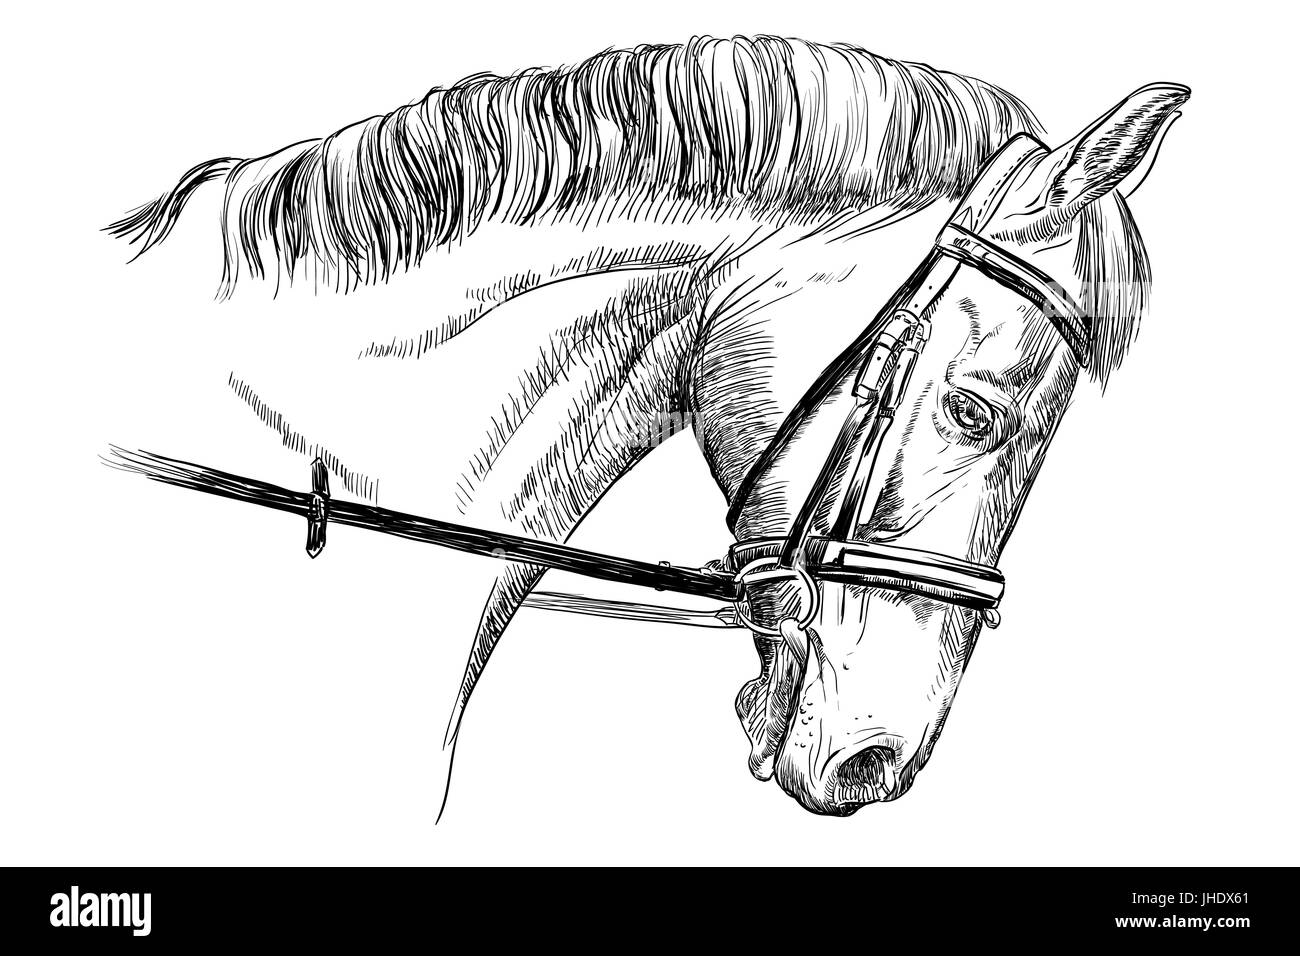 Isolierte Pferdekopf mit Trense in schwarz Vektor Handzeichnung Abbildung auf weißem Hintergrund Stock Vektor